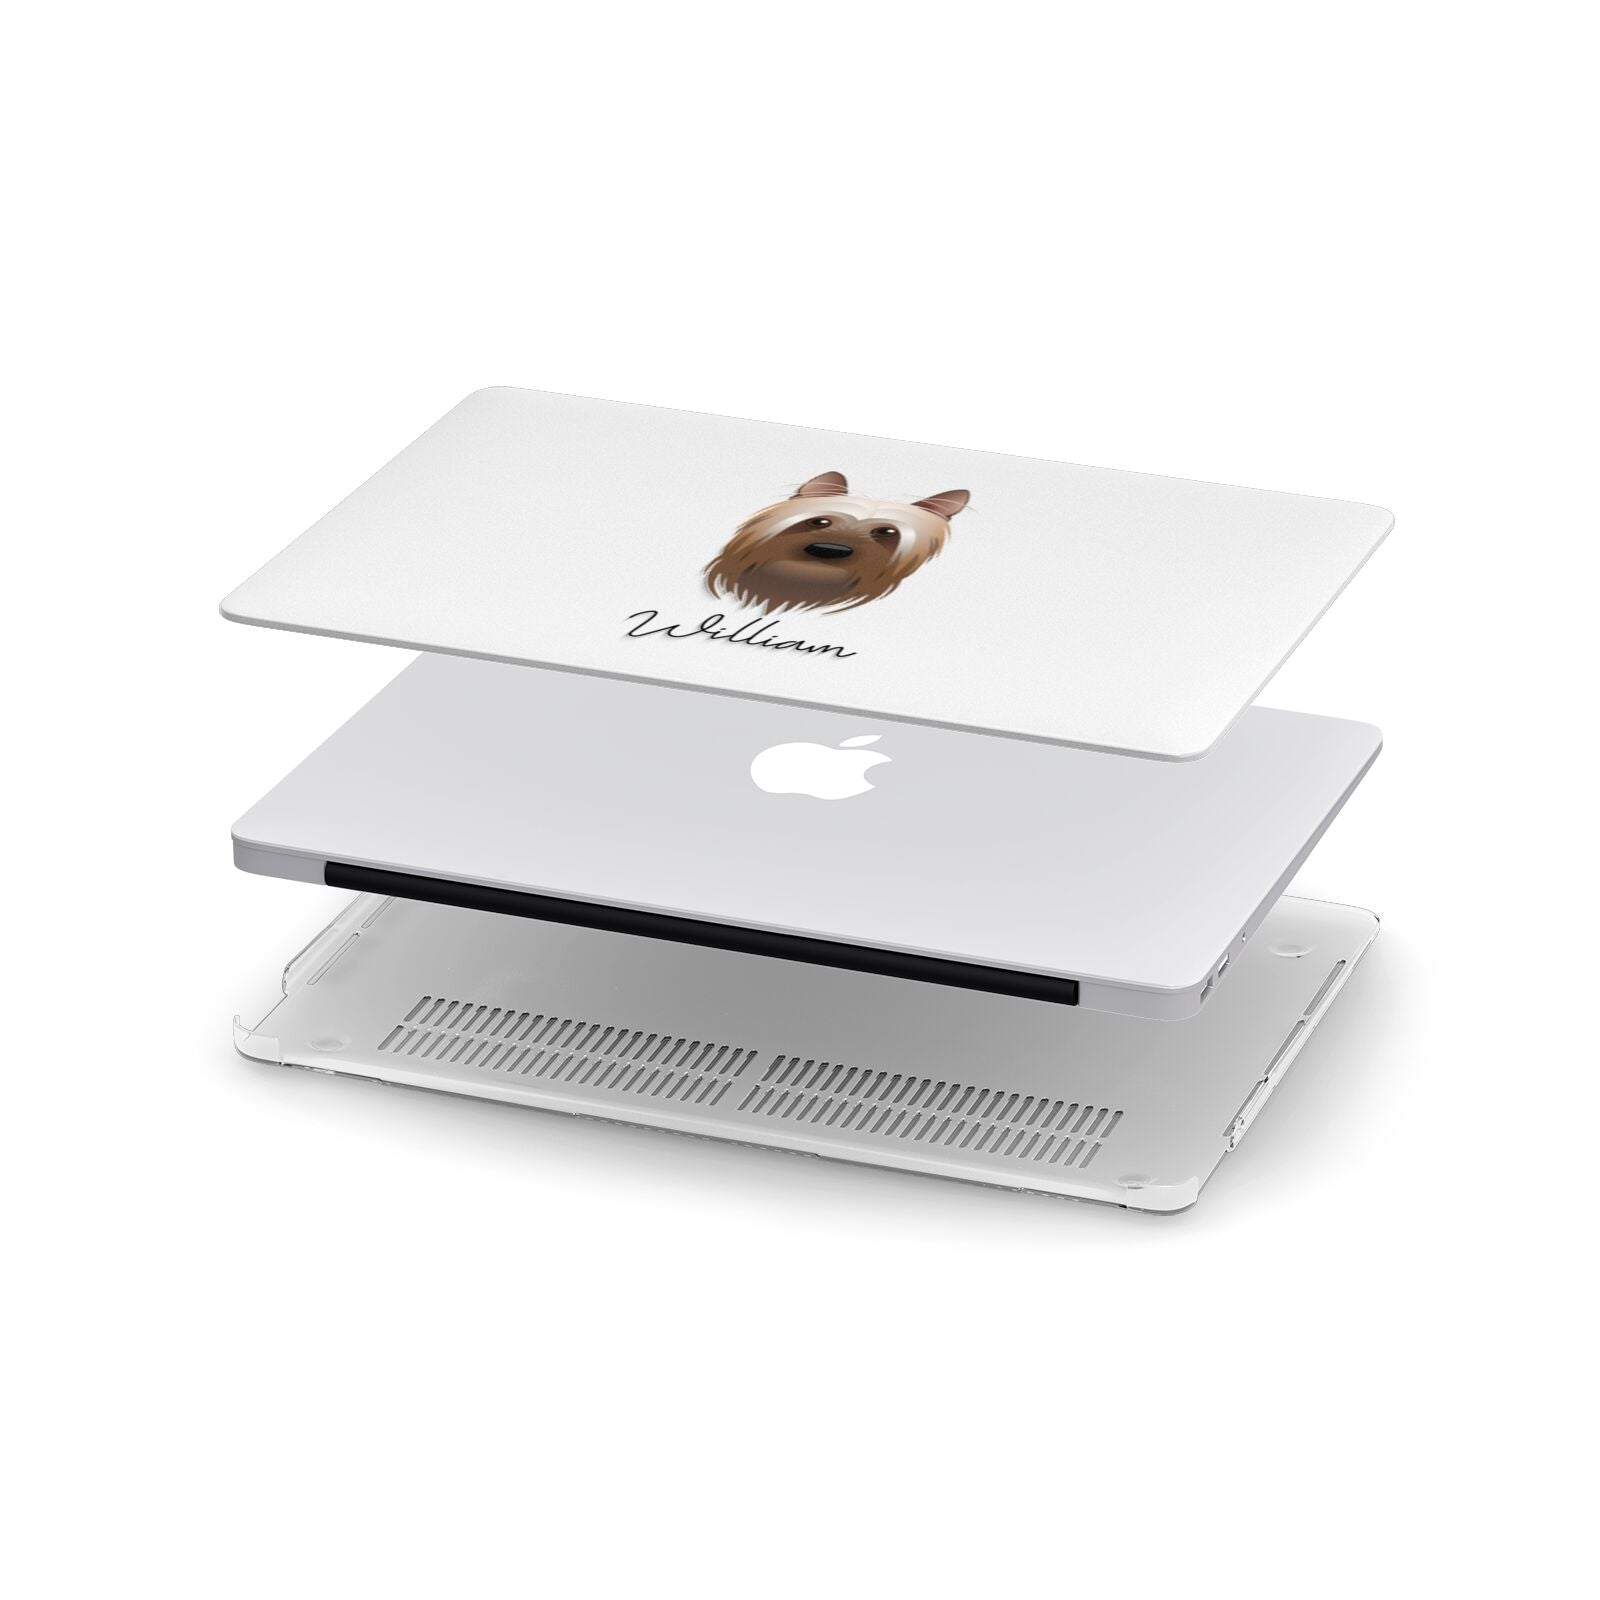 Australian Silky Terrier Personalised Apple MacBook Case in Detail